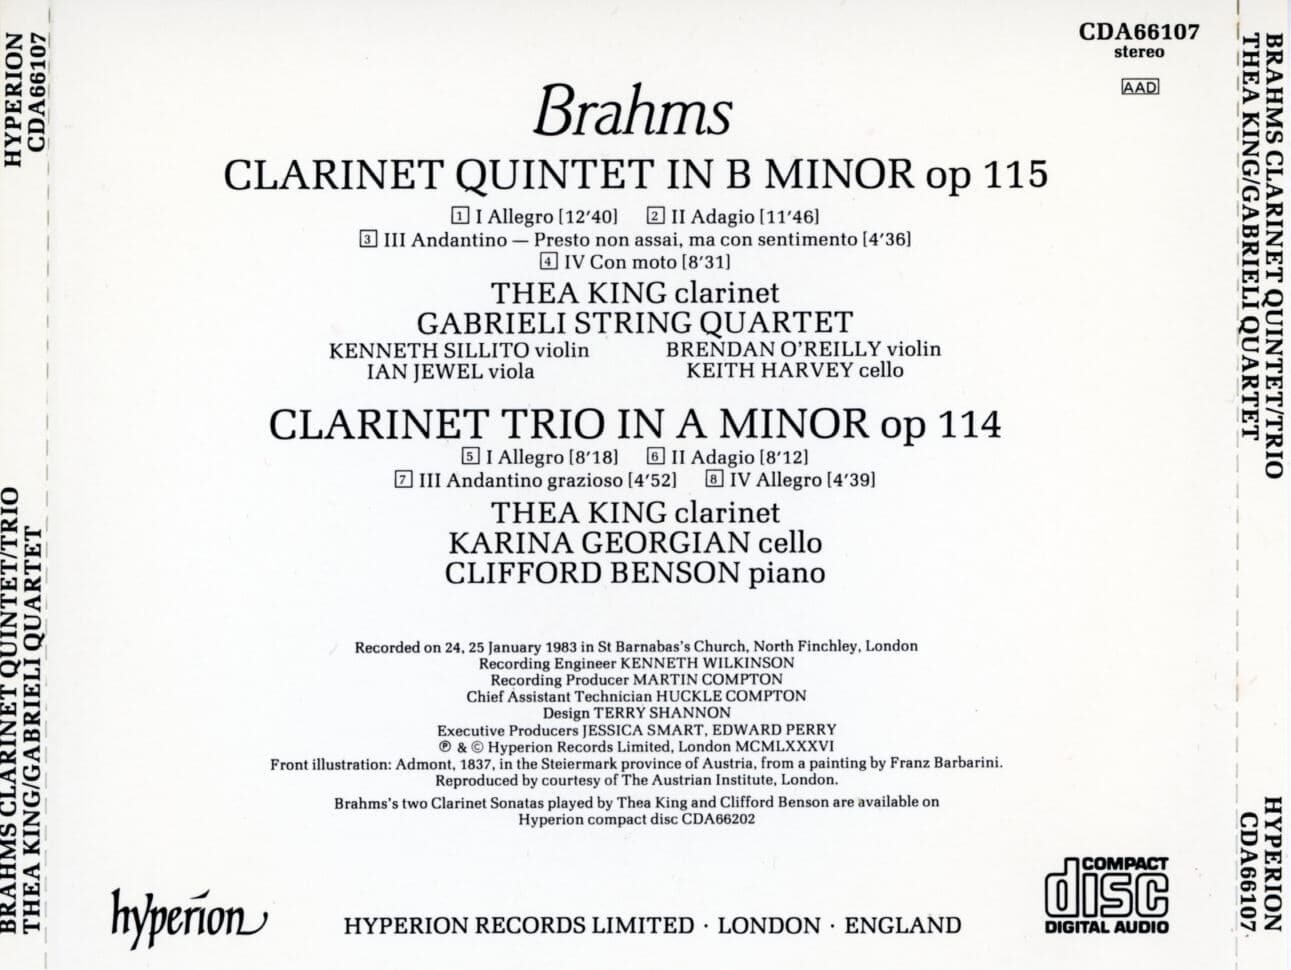 가브리엘리 스털링 콰르텟 - Gabrieli String Quartet - Brahms Clarinet Quintet,Clarinet Trio [U.K발매]